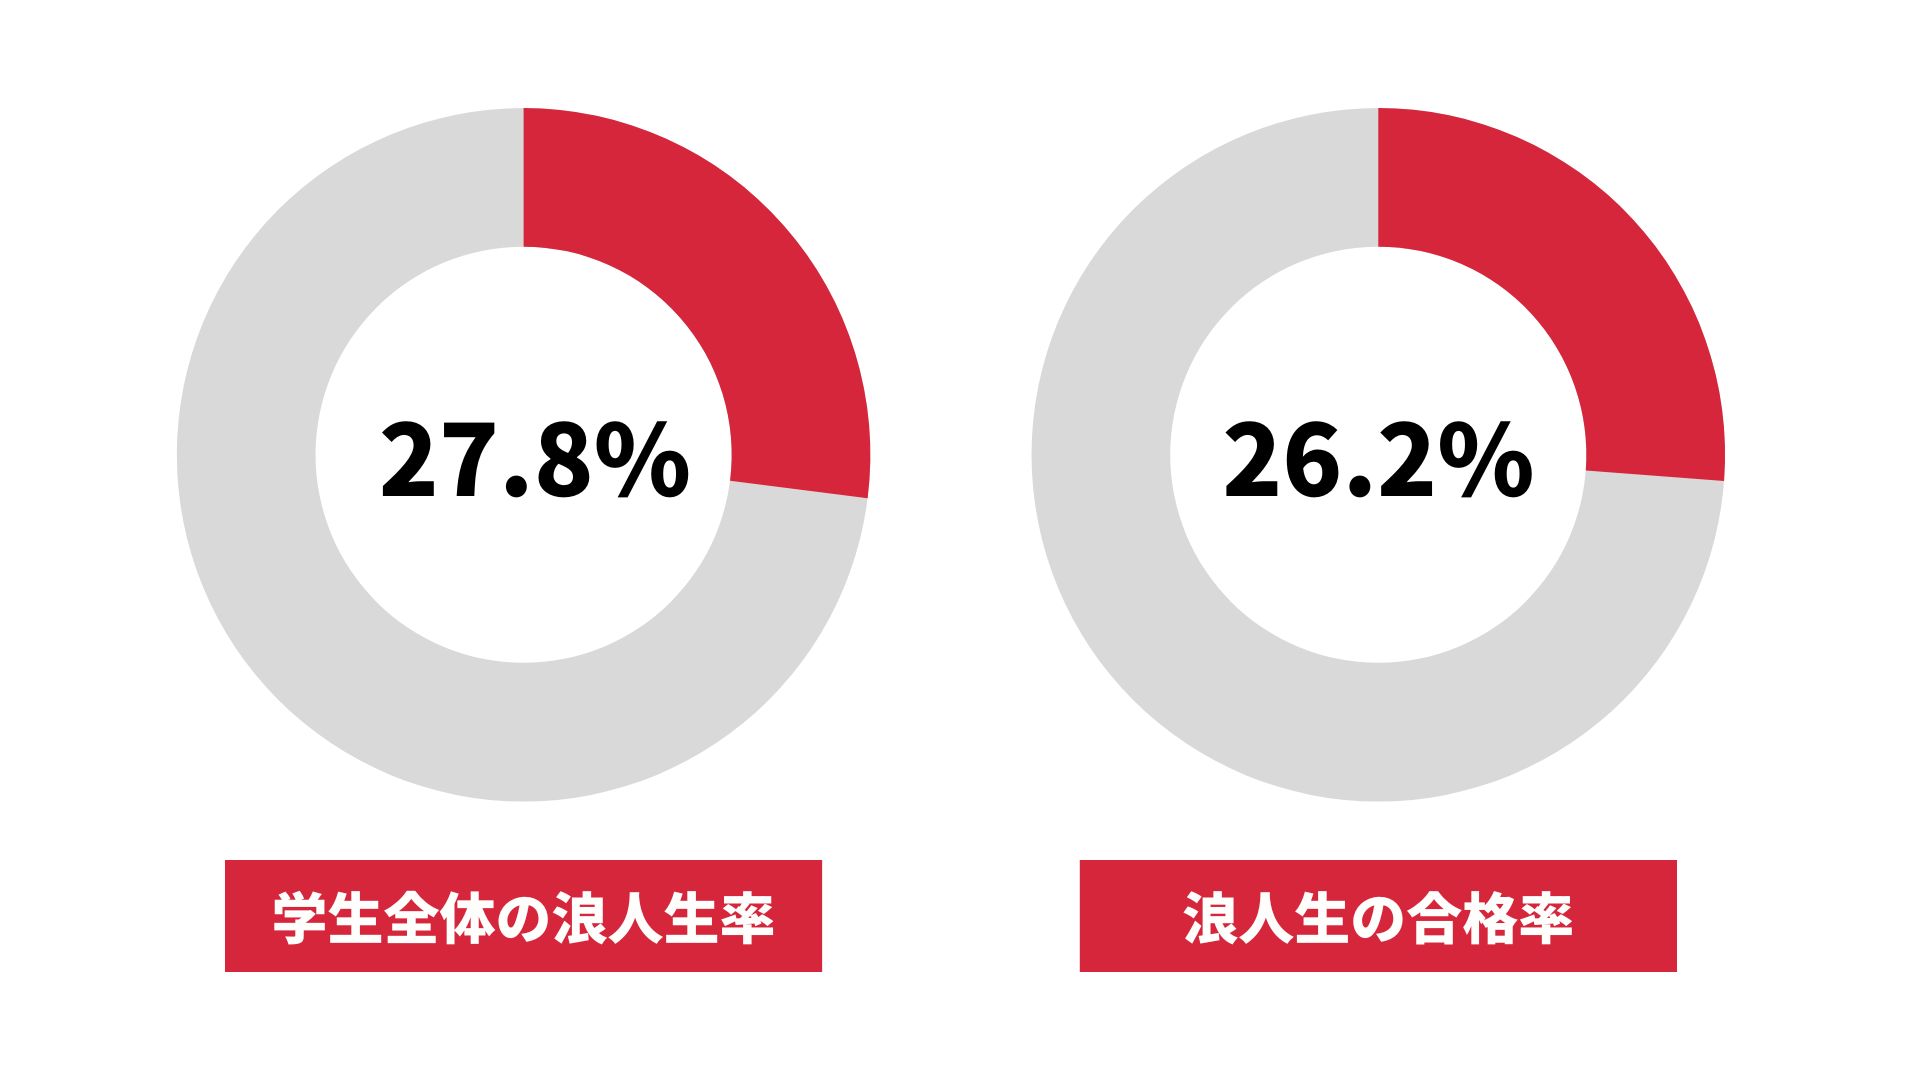 大阪教育大学の浪人生の割合